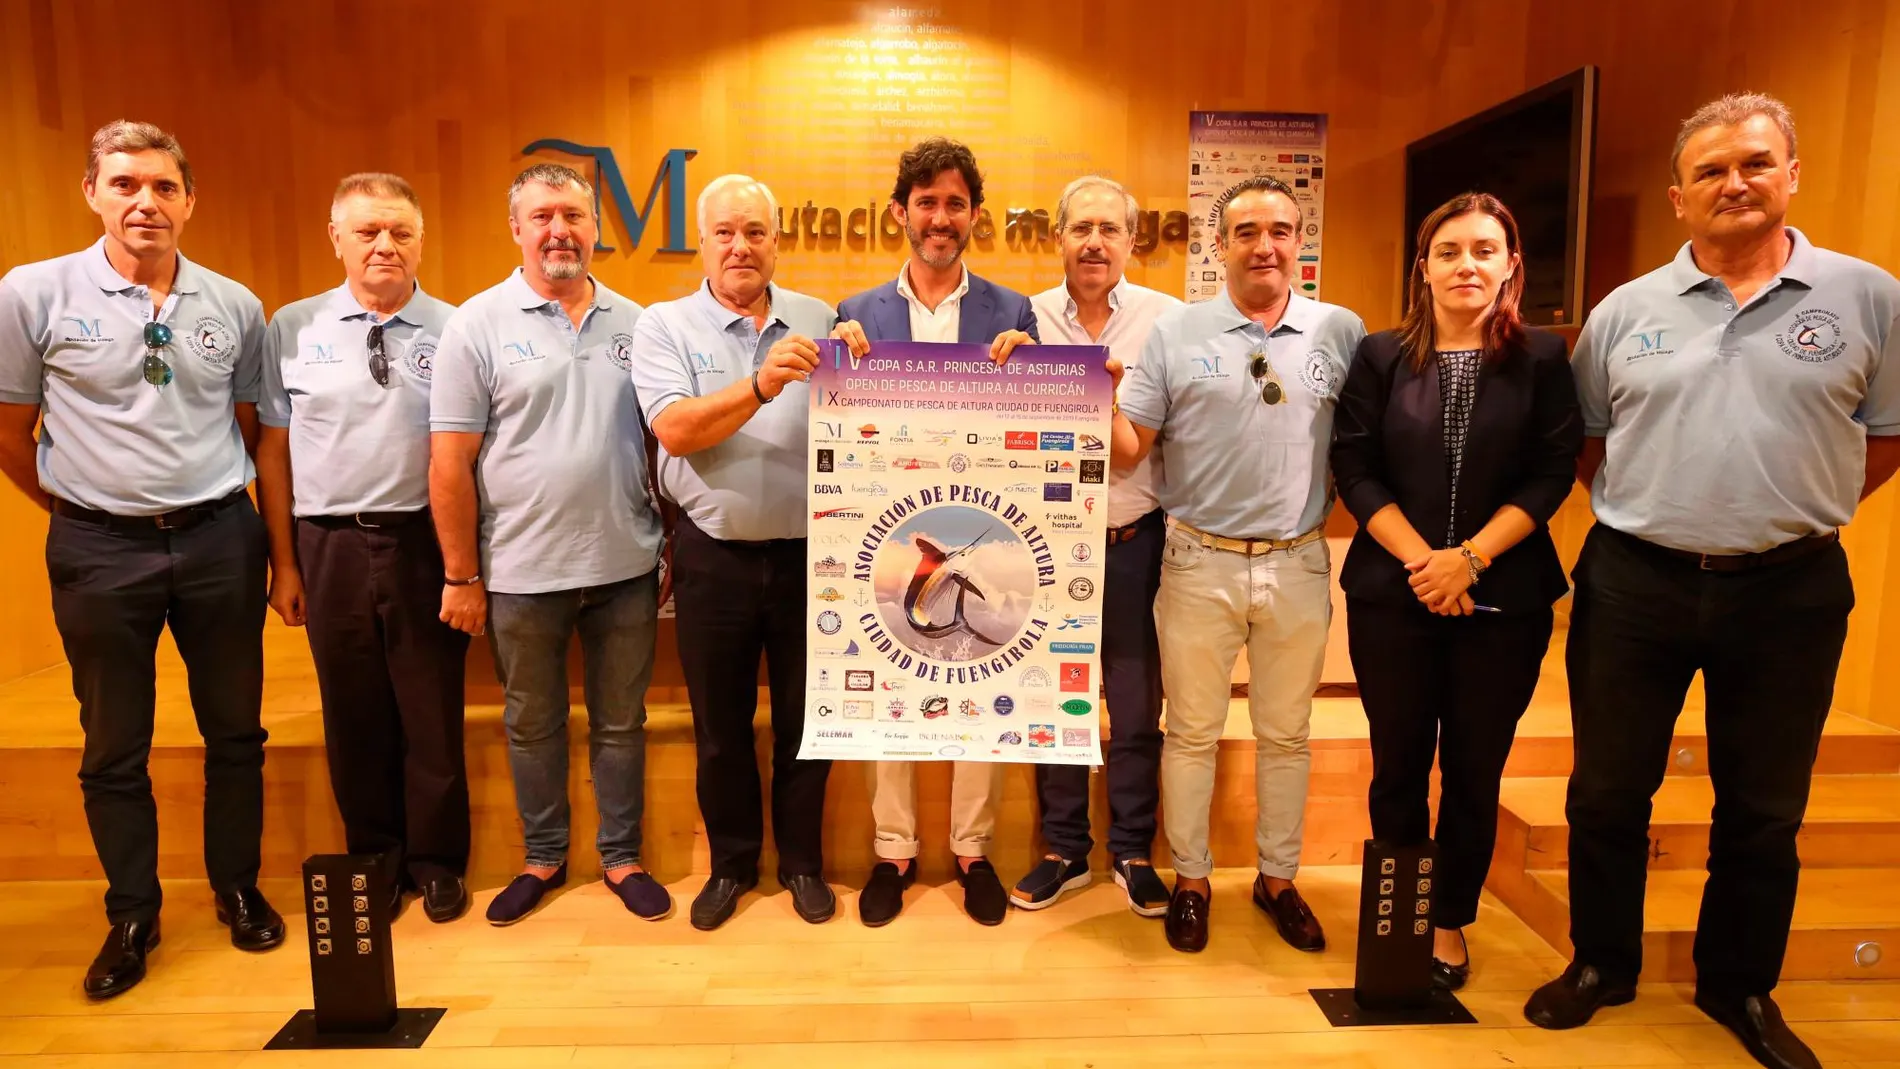 Presentación de la V Copa SAR Princesa de Asturias Open de Pesca de Altura al Curricán de Fuengirola / La Razón